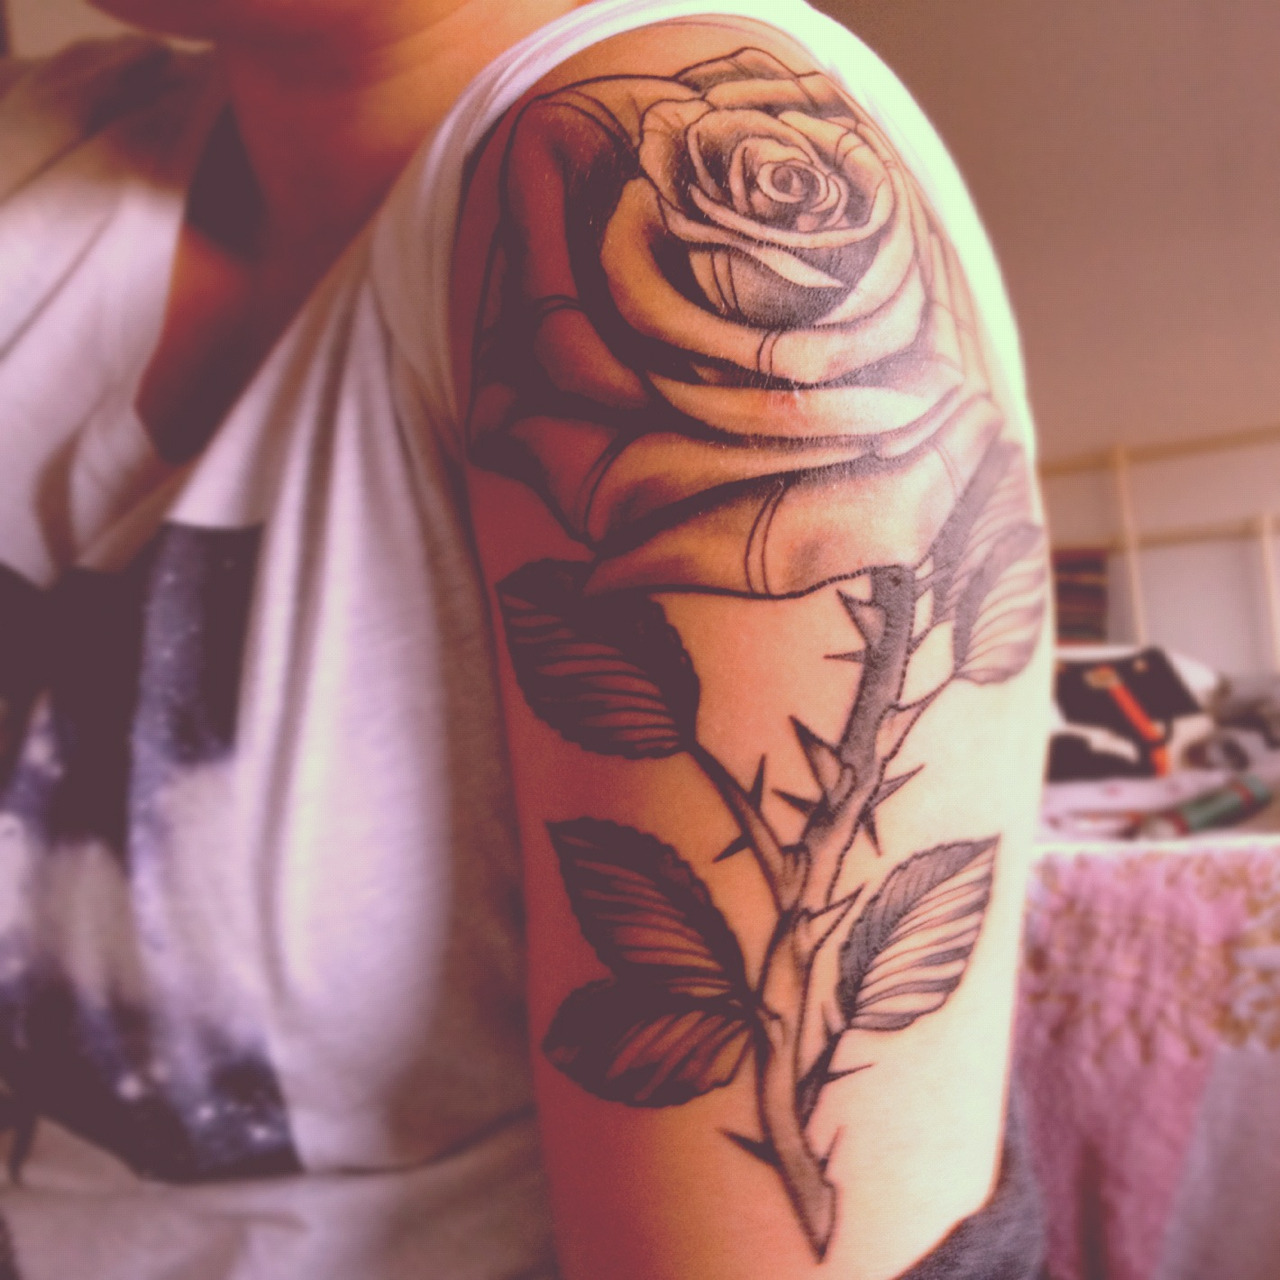 Upper arm rose tattoos for women